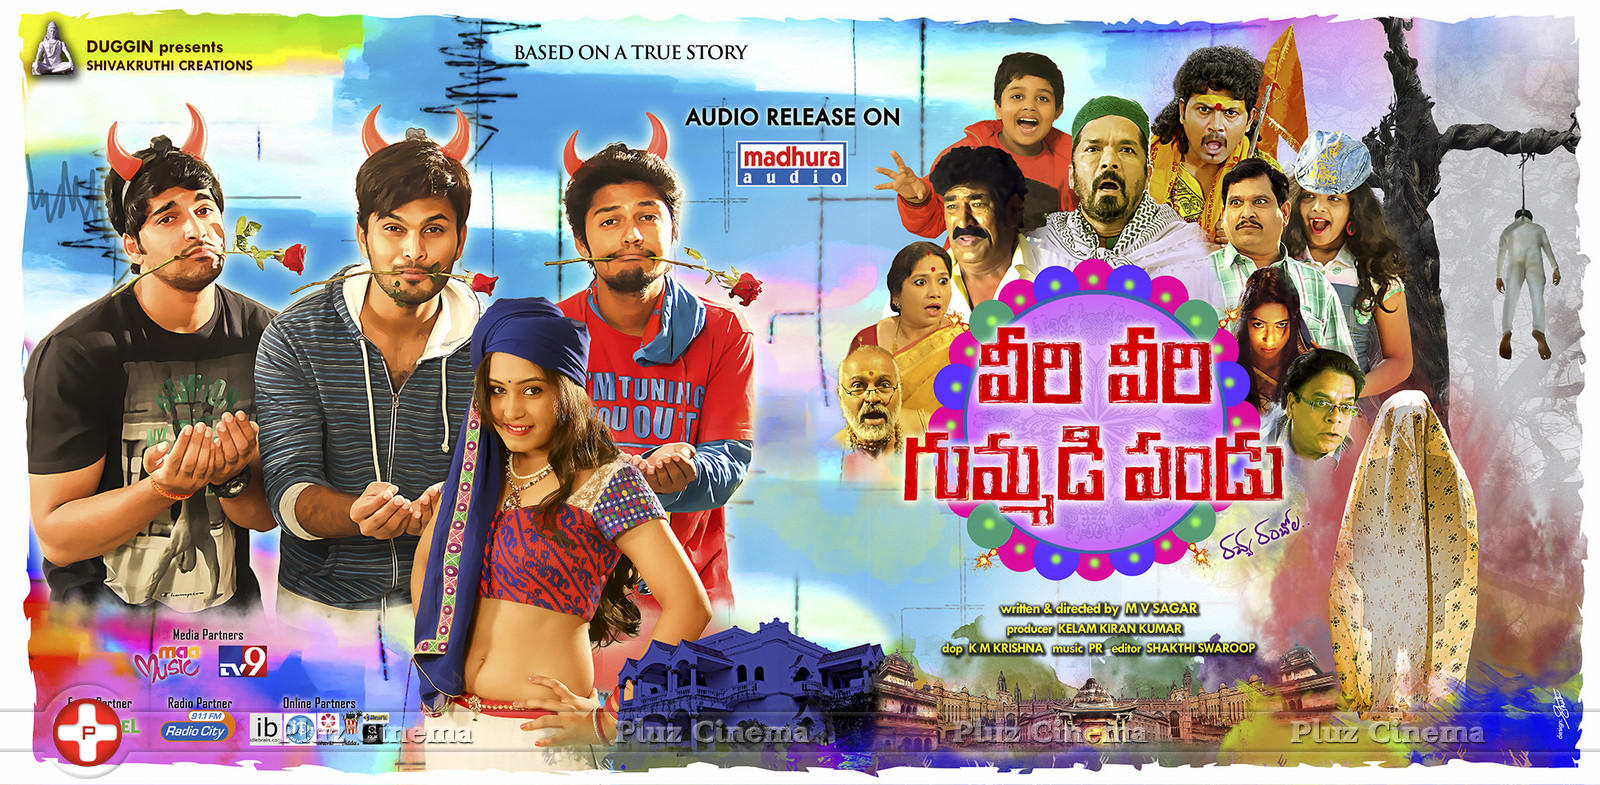 Veeri Veeri Gummadi Pandu Movie Posters | Picture 1154977